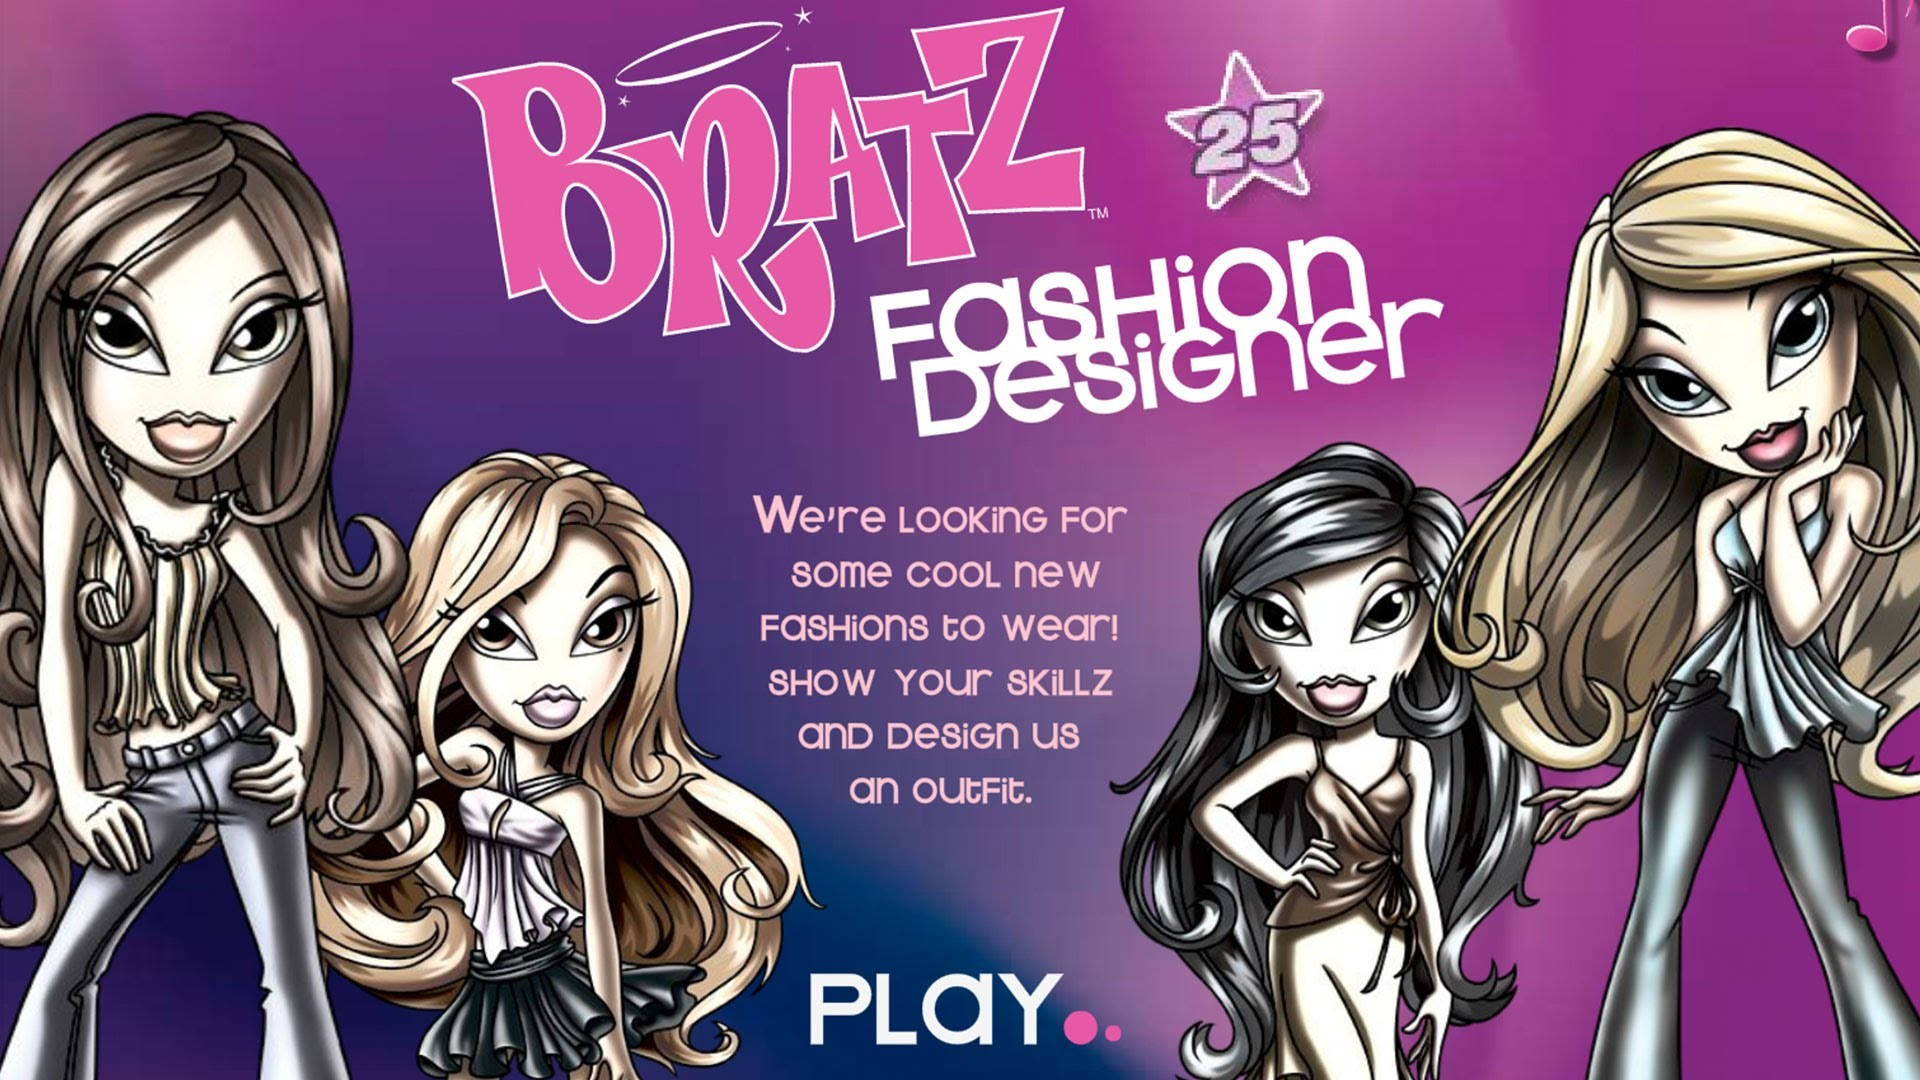 Bratz Aesthetic Fashion Game Poster